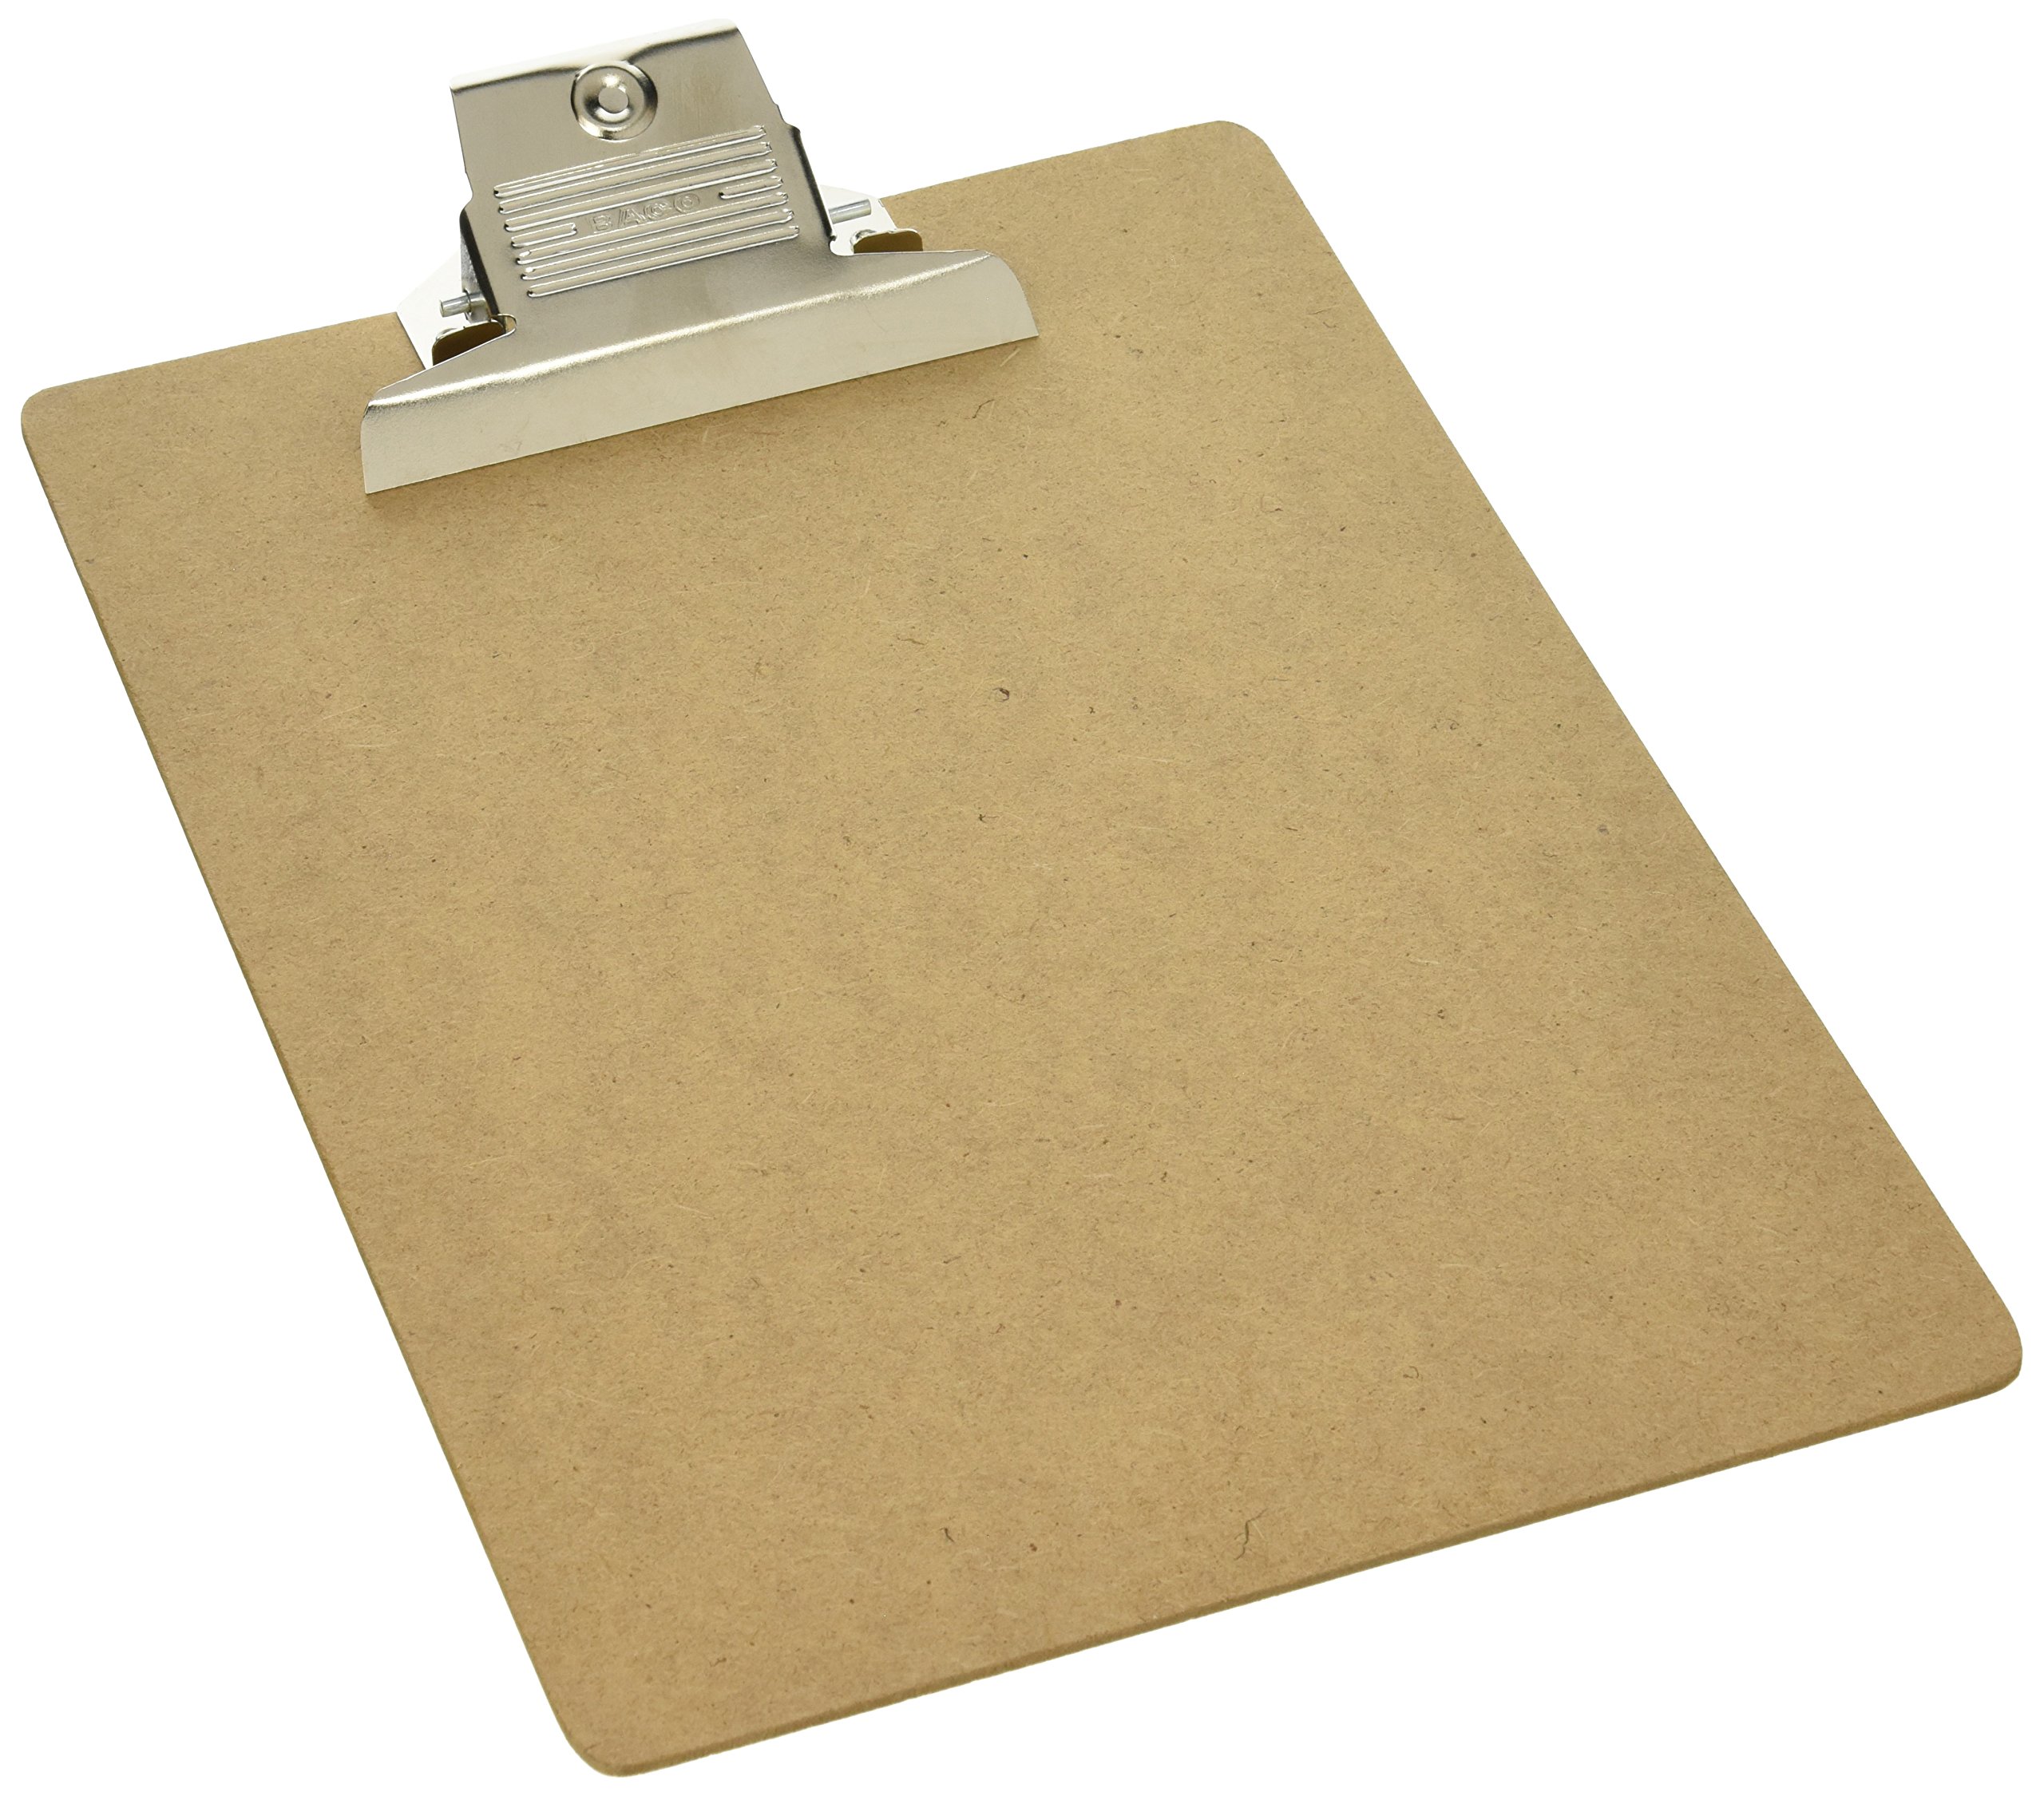 Tabla Baco fibracel carta broche metálic Tamaño carta de 23 x 32 cm. fabricadas con base de mdf de 2.5 mm de espesor y broche en acabado niquelado                                                                                                                                                       o, tamaño carta, 1 pieza                 - BACO